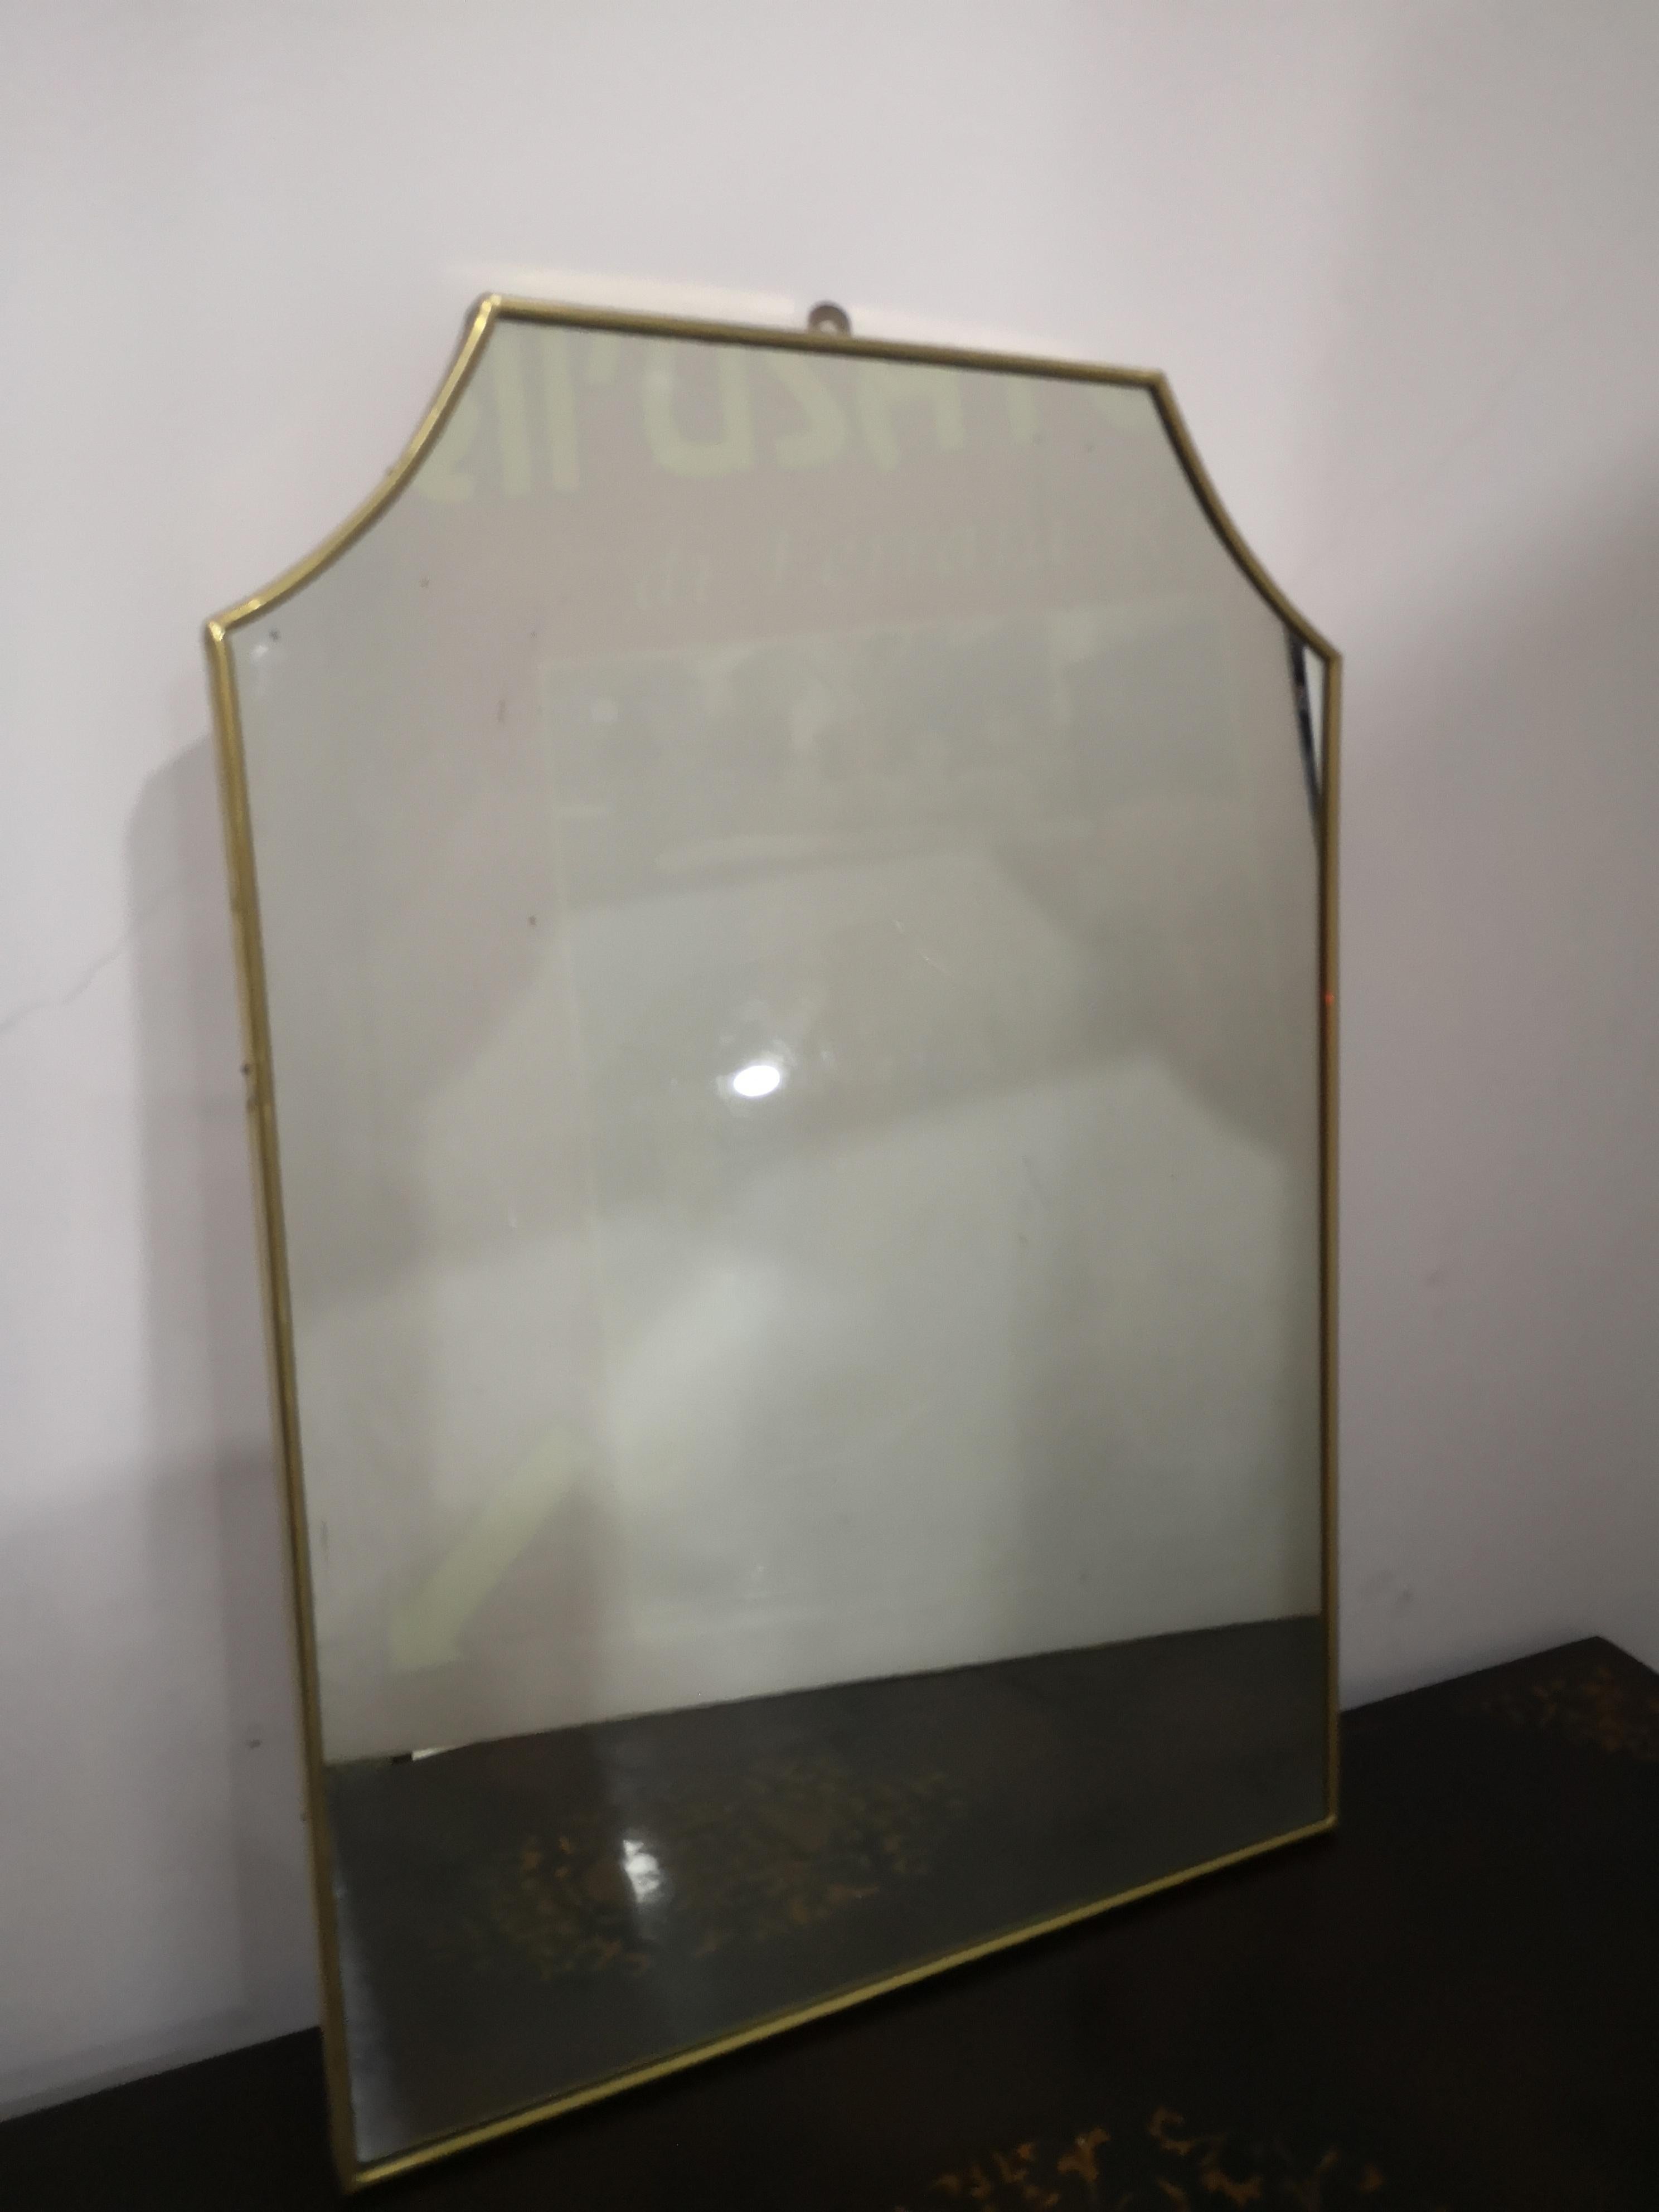 Specchio da parete in ottone anni 50 
en bonnes conditions 
Lo specchio misura :
dans l'espace     cm 70
en larghezza cm 50